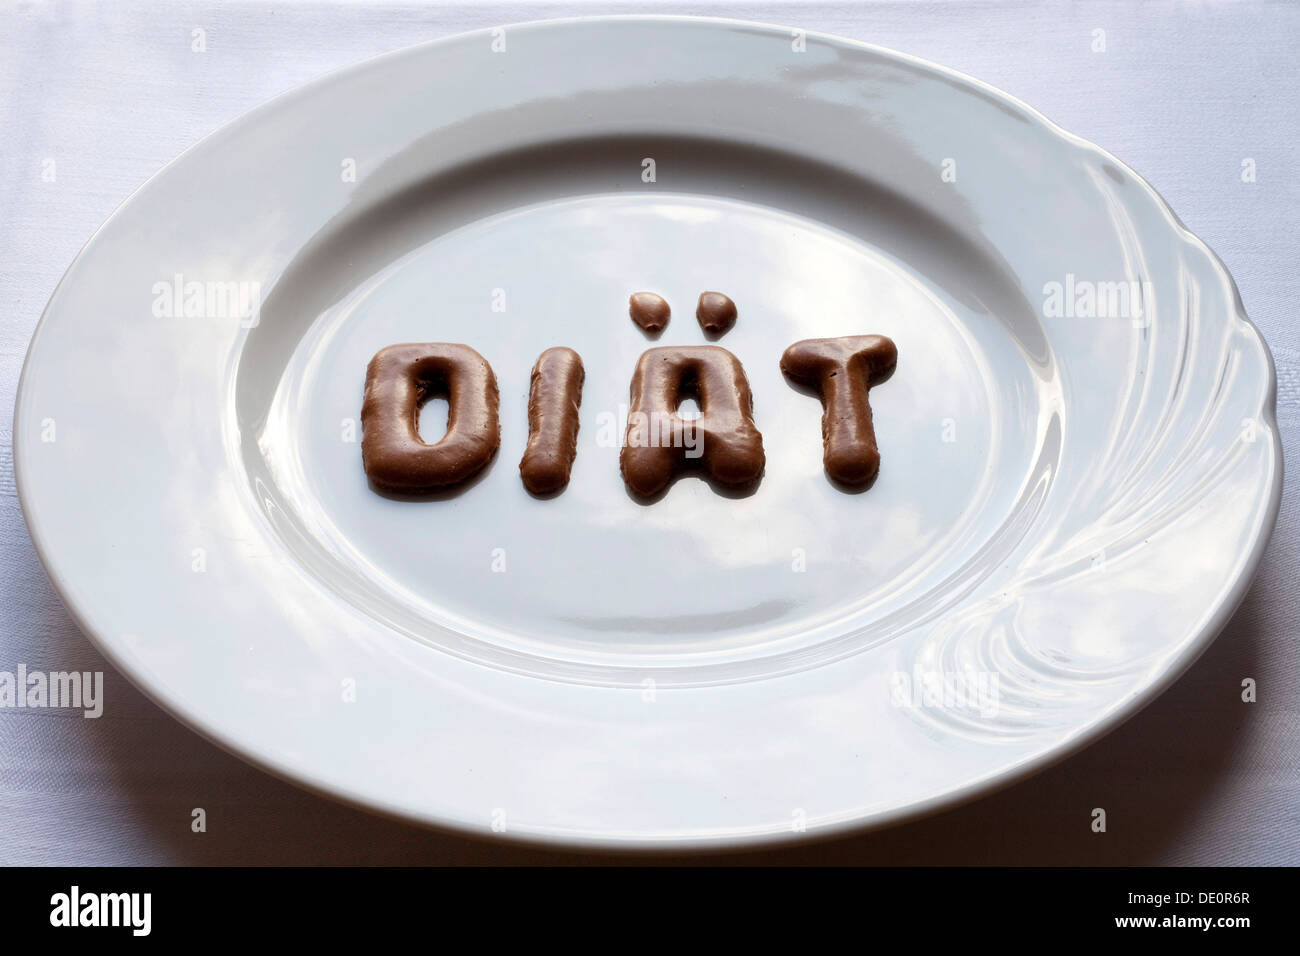 Buchstaben, das Wort "Diaet", Deutsch für "Diät" hergestellt aus Russisch Brot auf einem weißen Teller Stockfoto